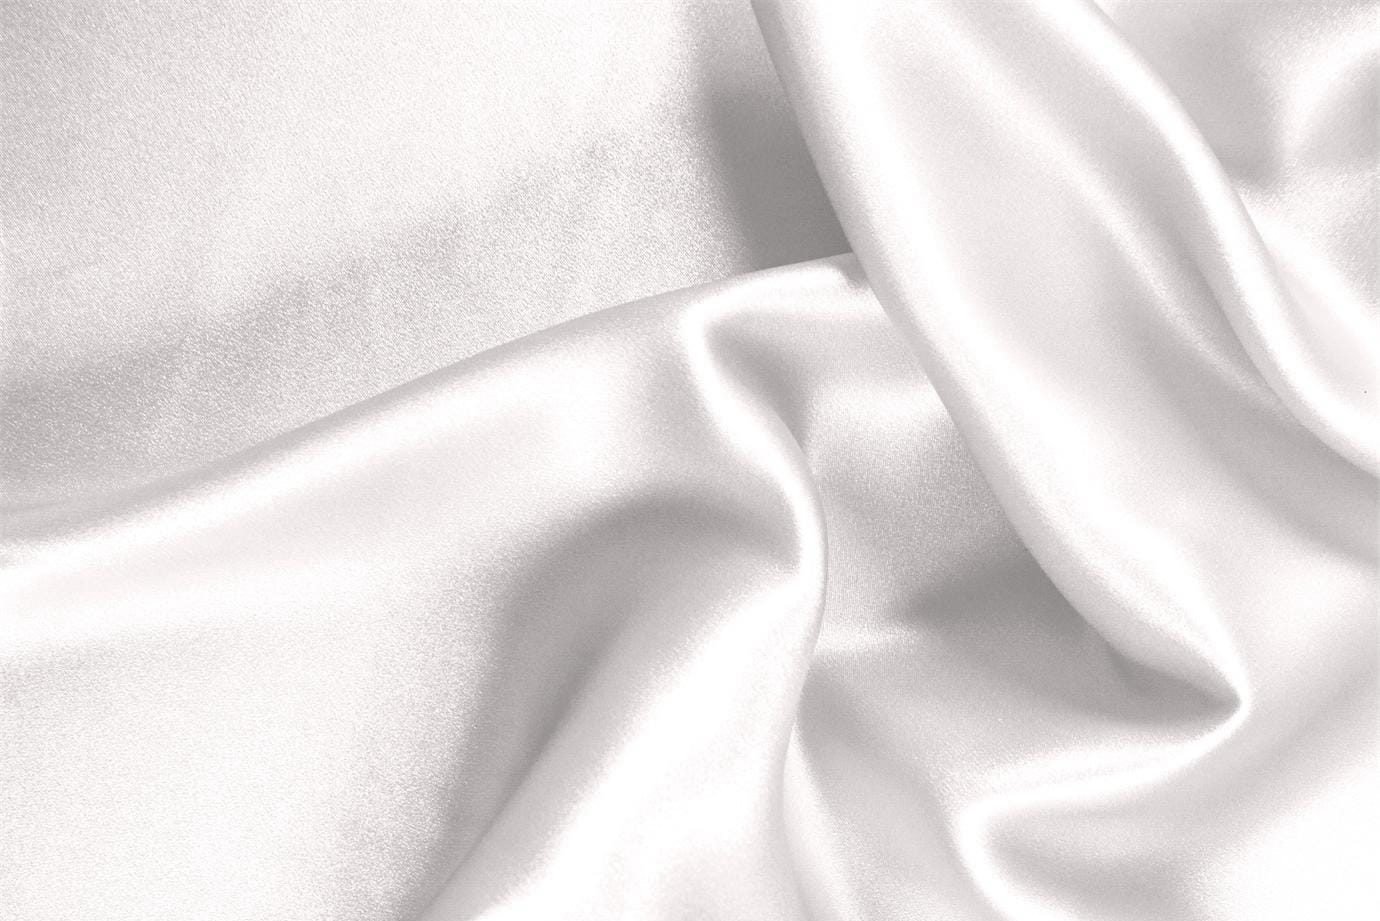 Tissu Satin stretch Blanc lait en Soie, Stretch pour vêtements